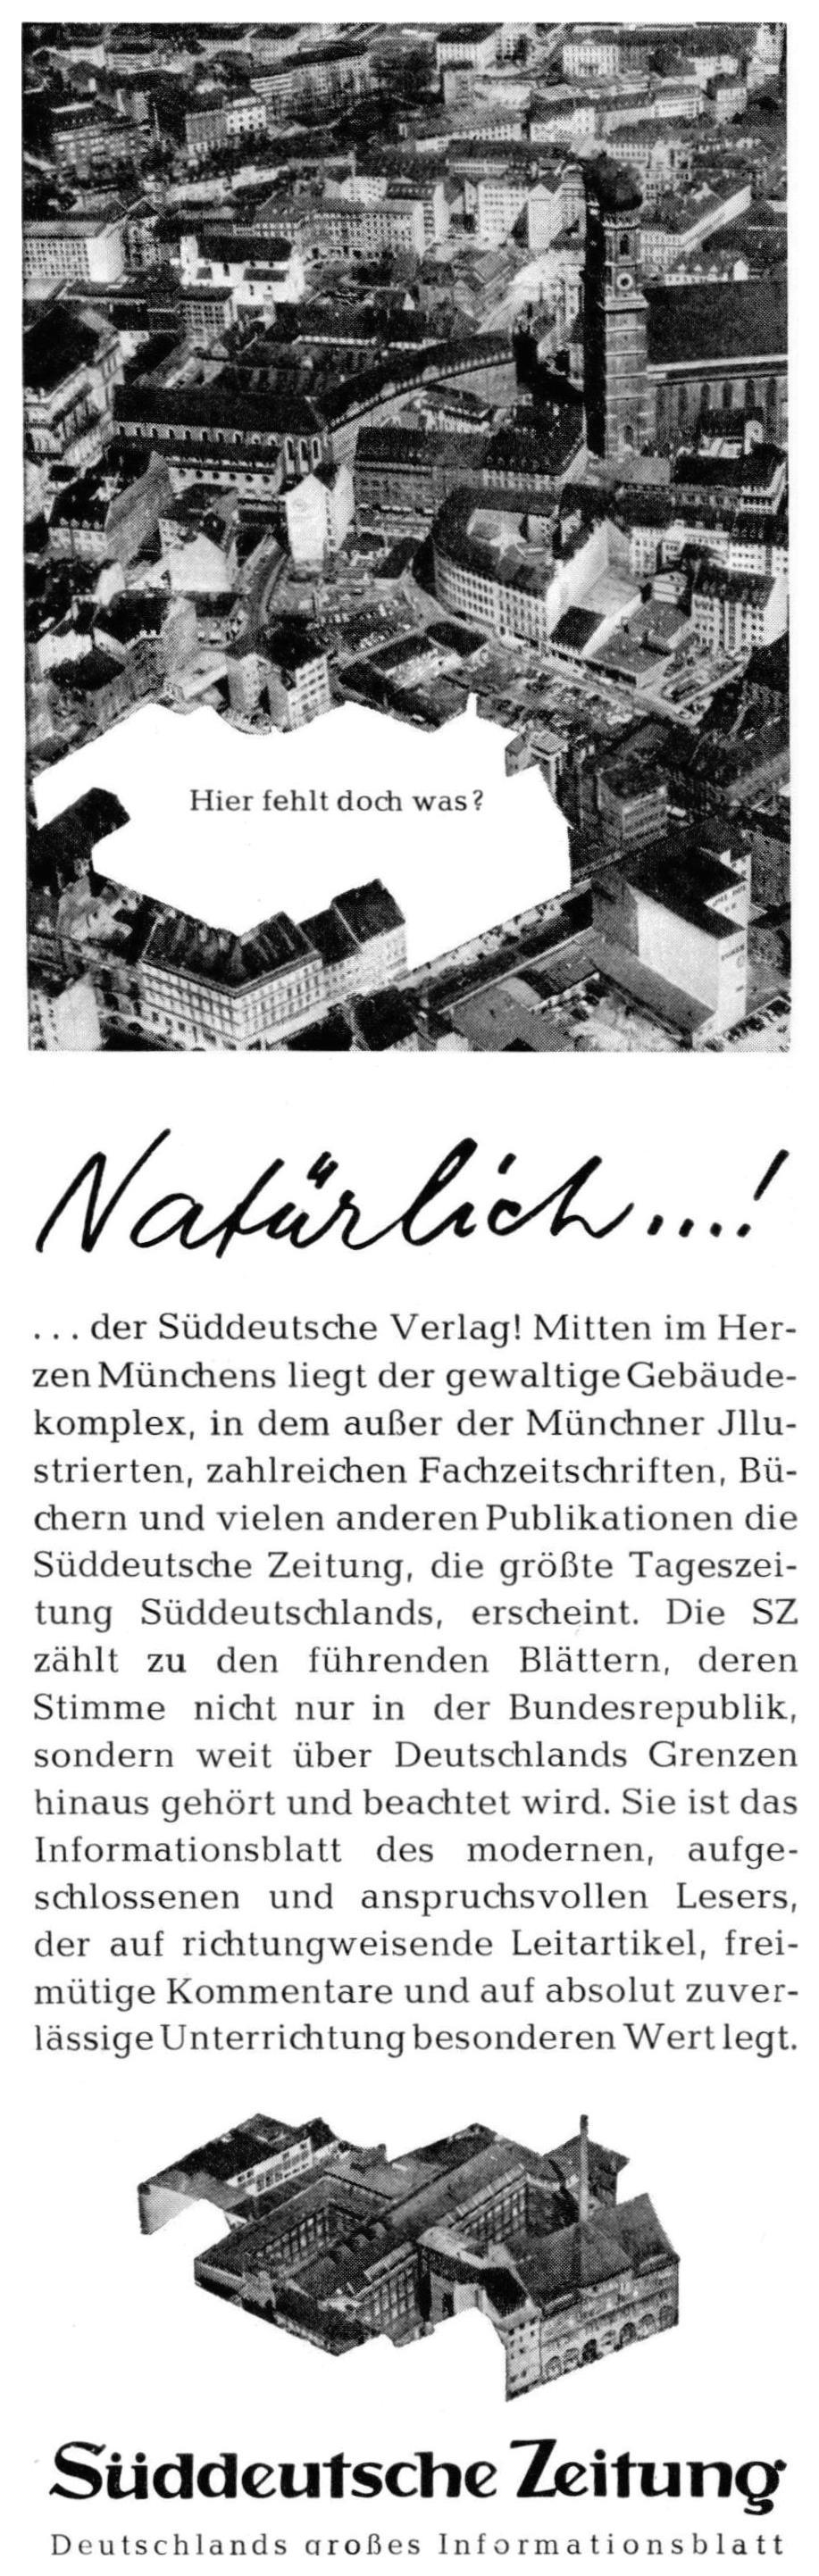 Sueddeutsche Zeitung 1958 1421.jpg